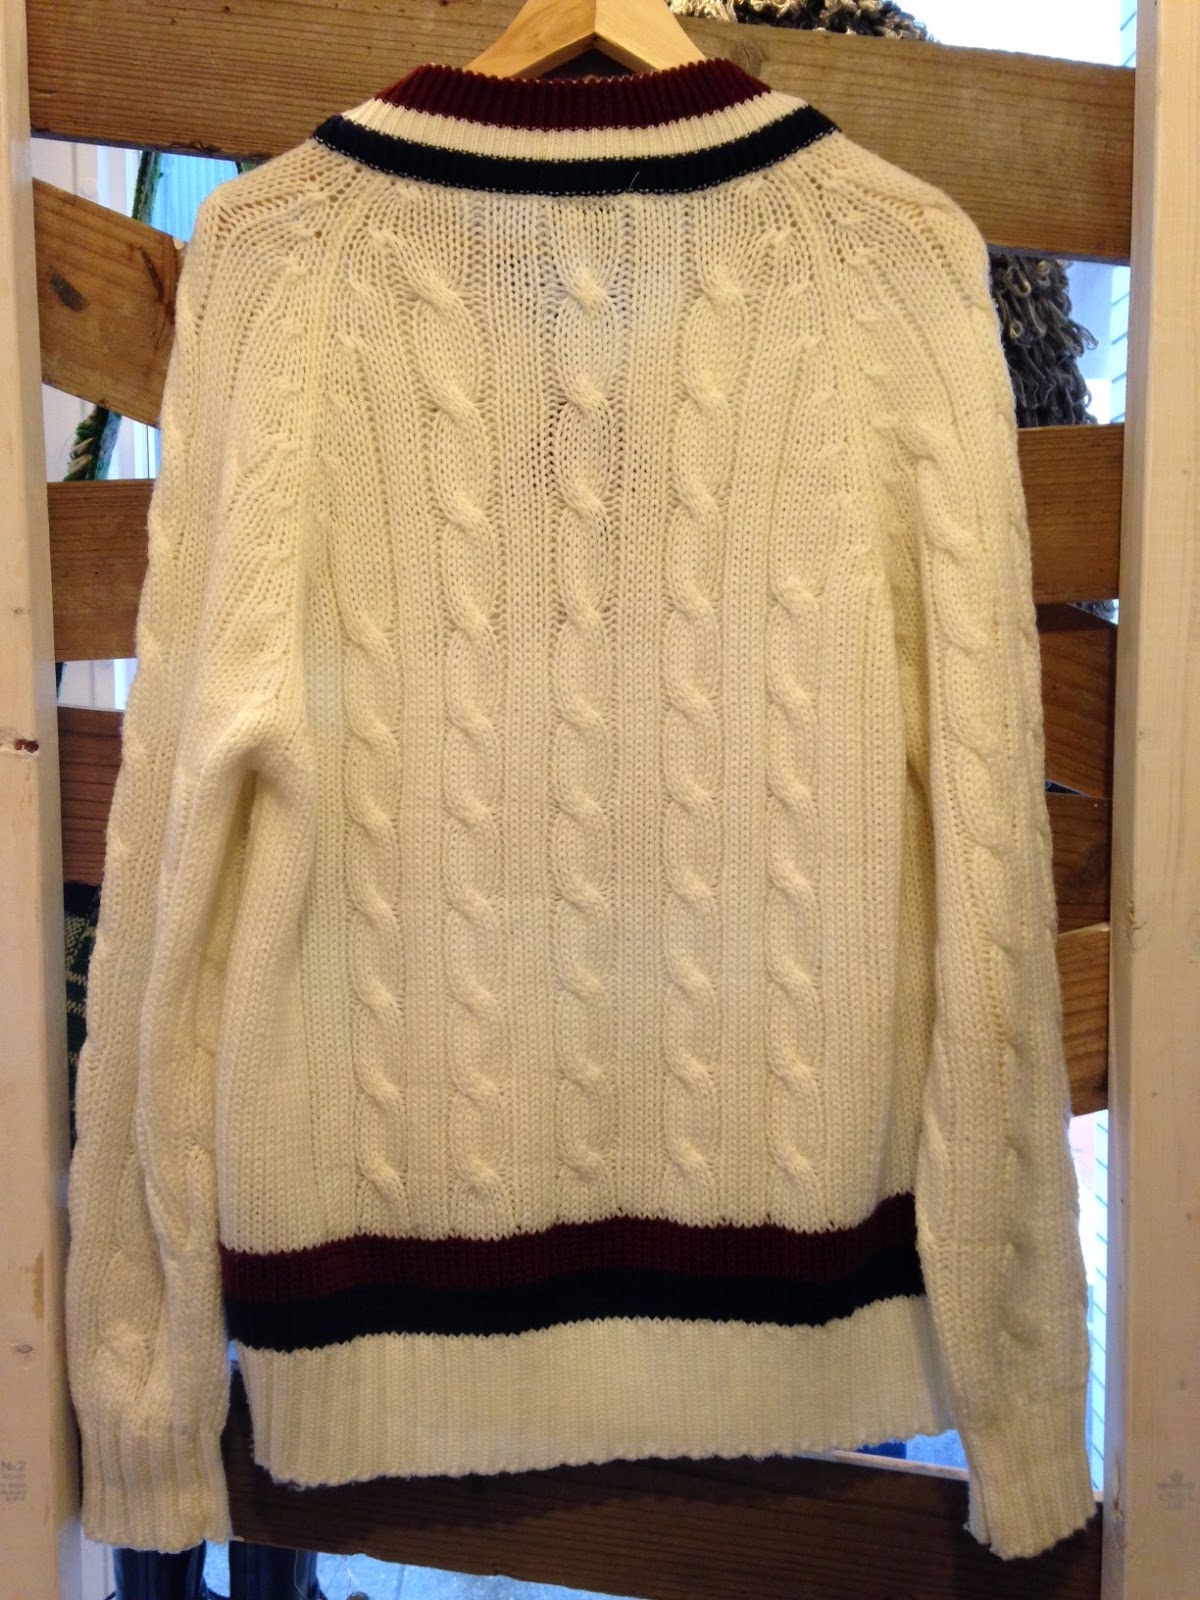 高円寺 古着・ヴィンテージ店 SAMAKI: ラコステのテニスセーター/Lacoste tennis sweater